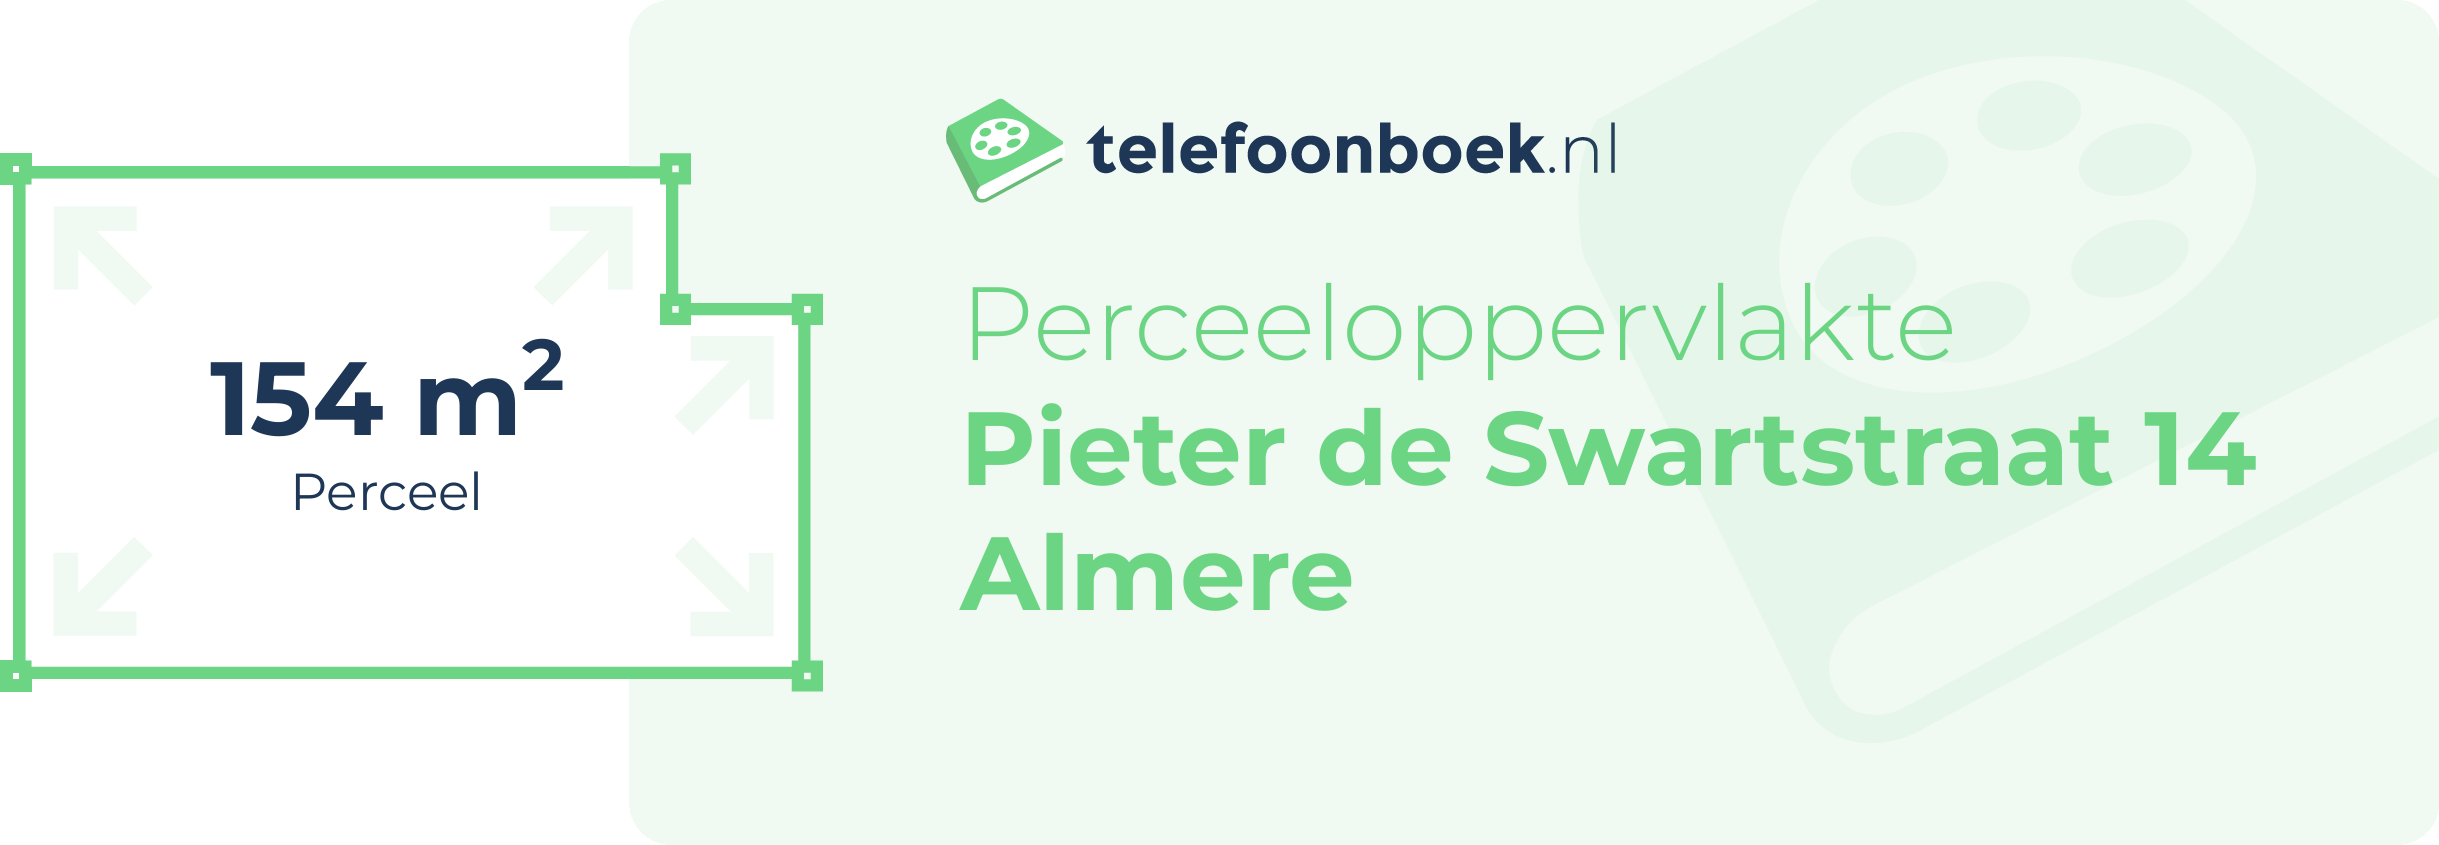 Perceeloppervlakte Pieter De Swartstraat 14 Almere